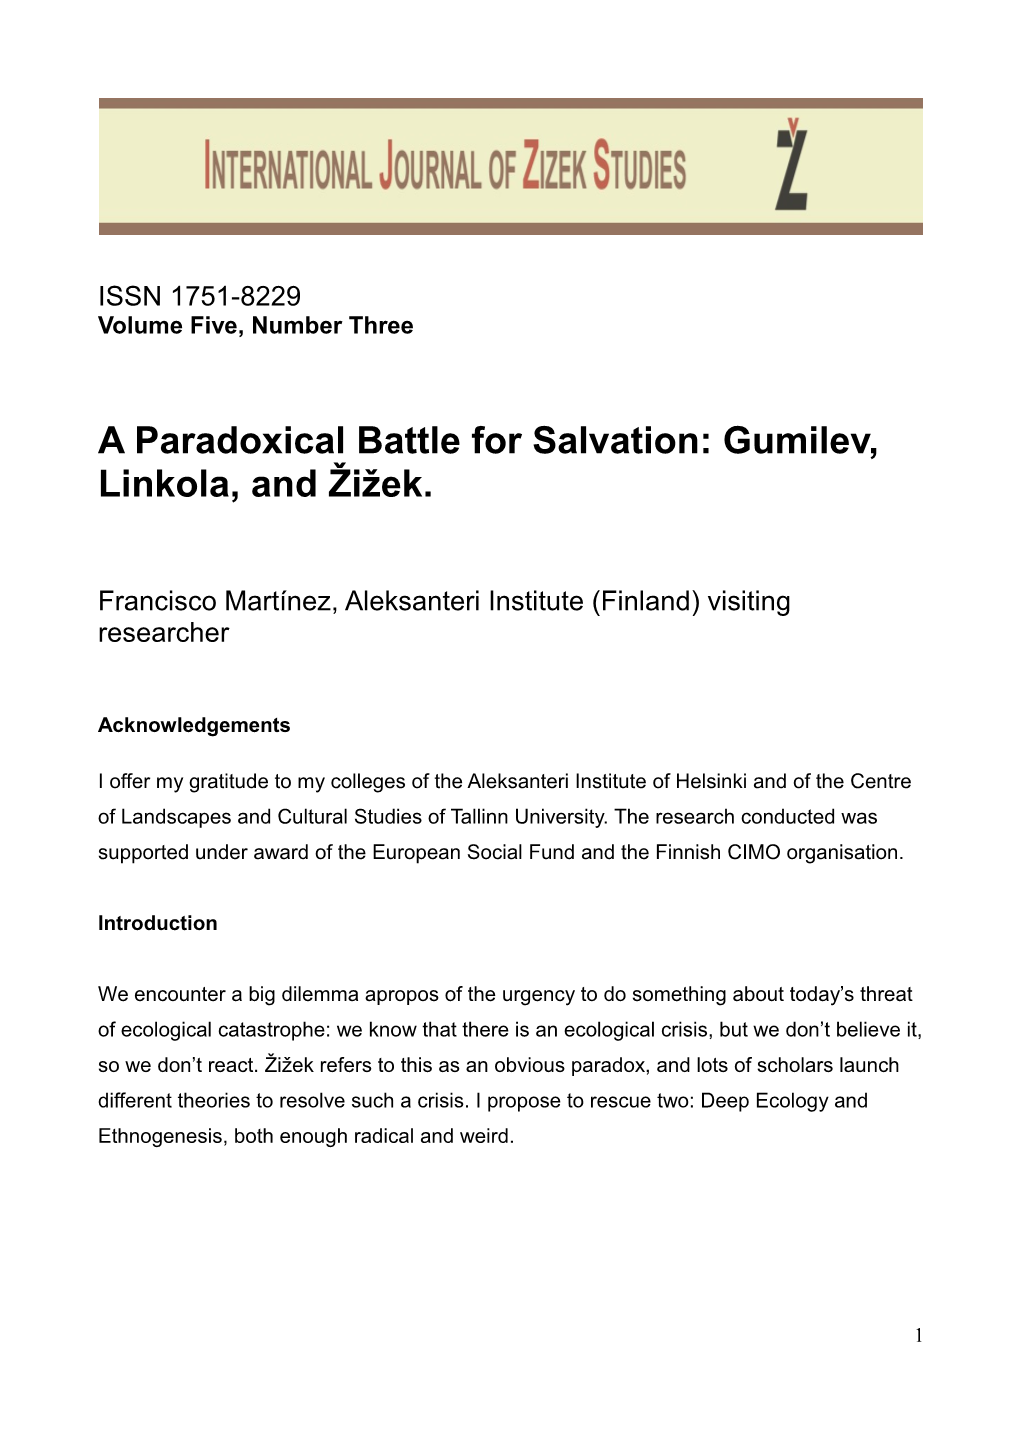 A Paradoxical Battle for Salvation: Gumilev, Linkola, and Žižek